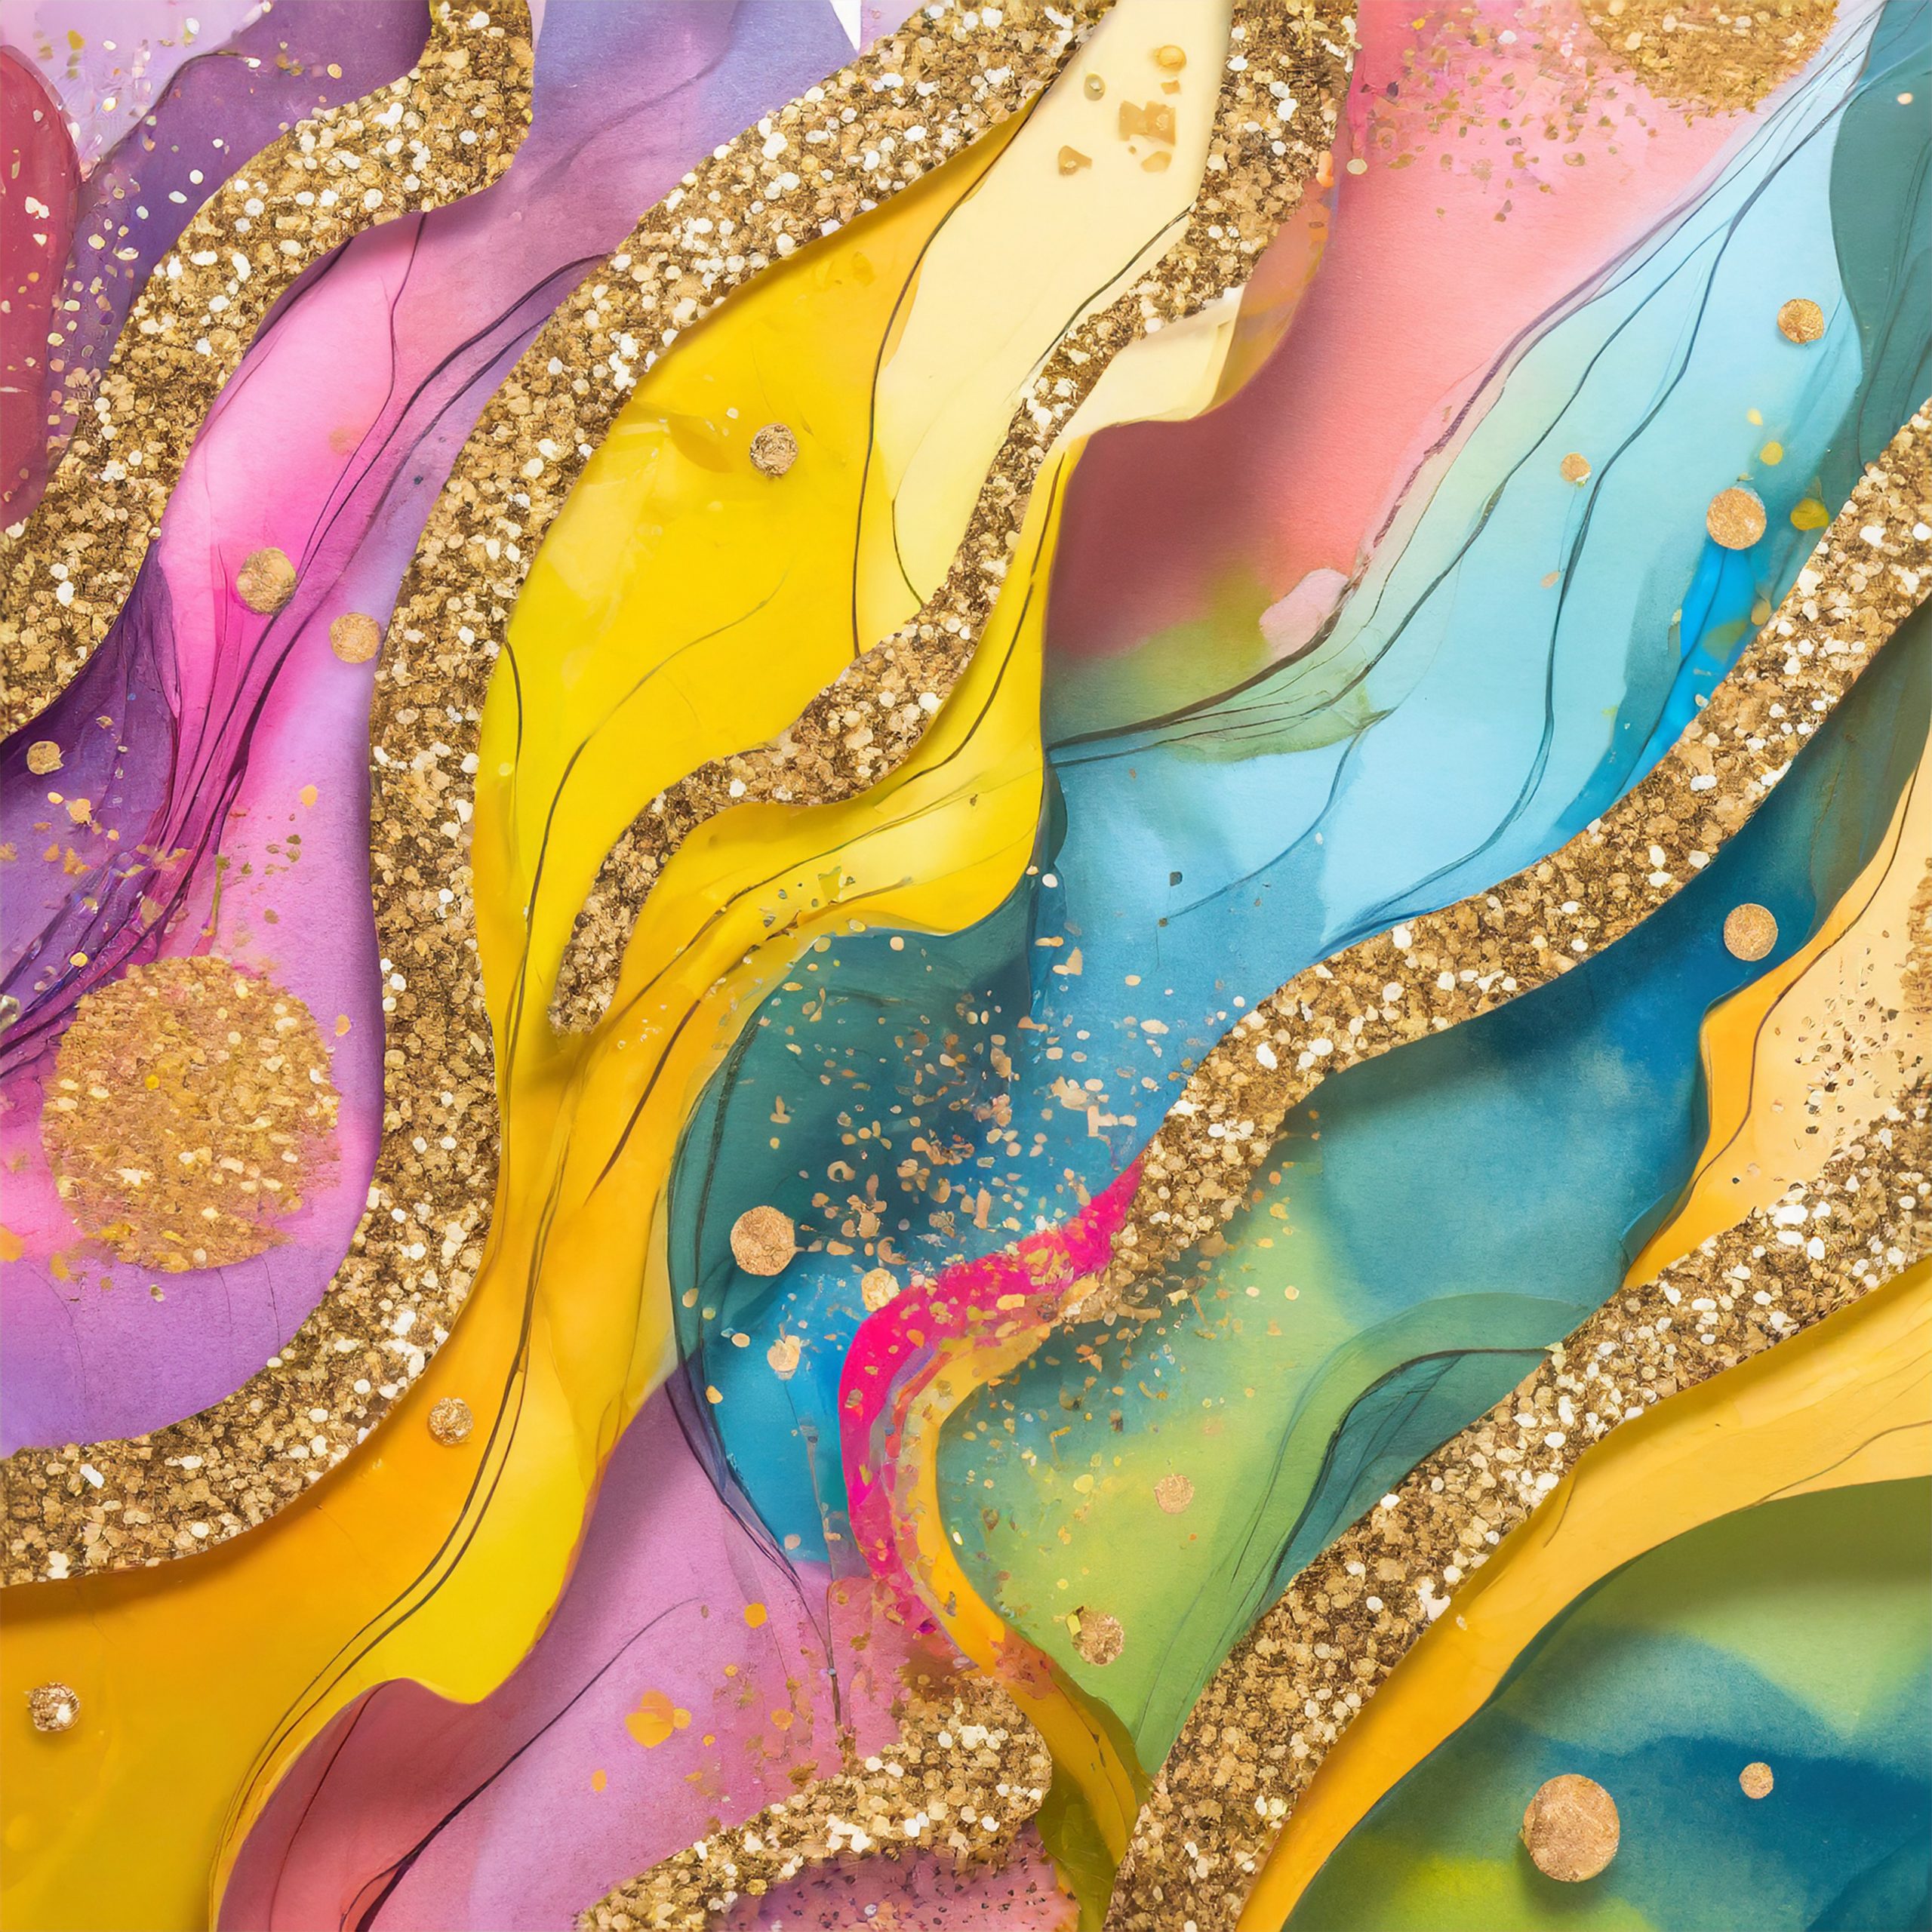 Salpicaduras de pintura mezcladas con glitter color oro